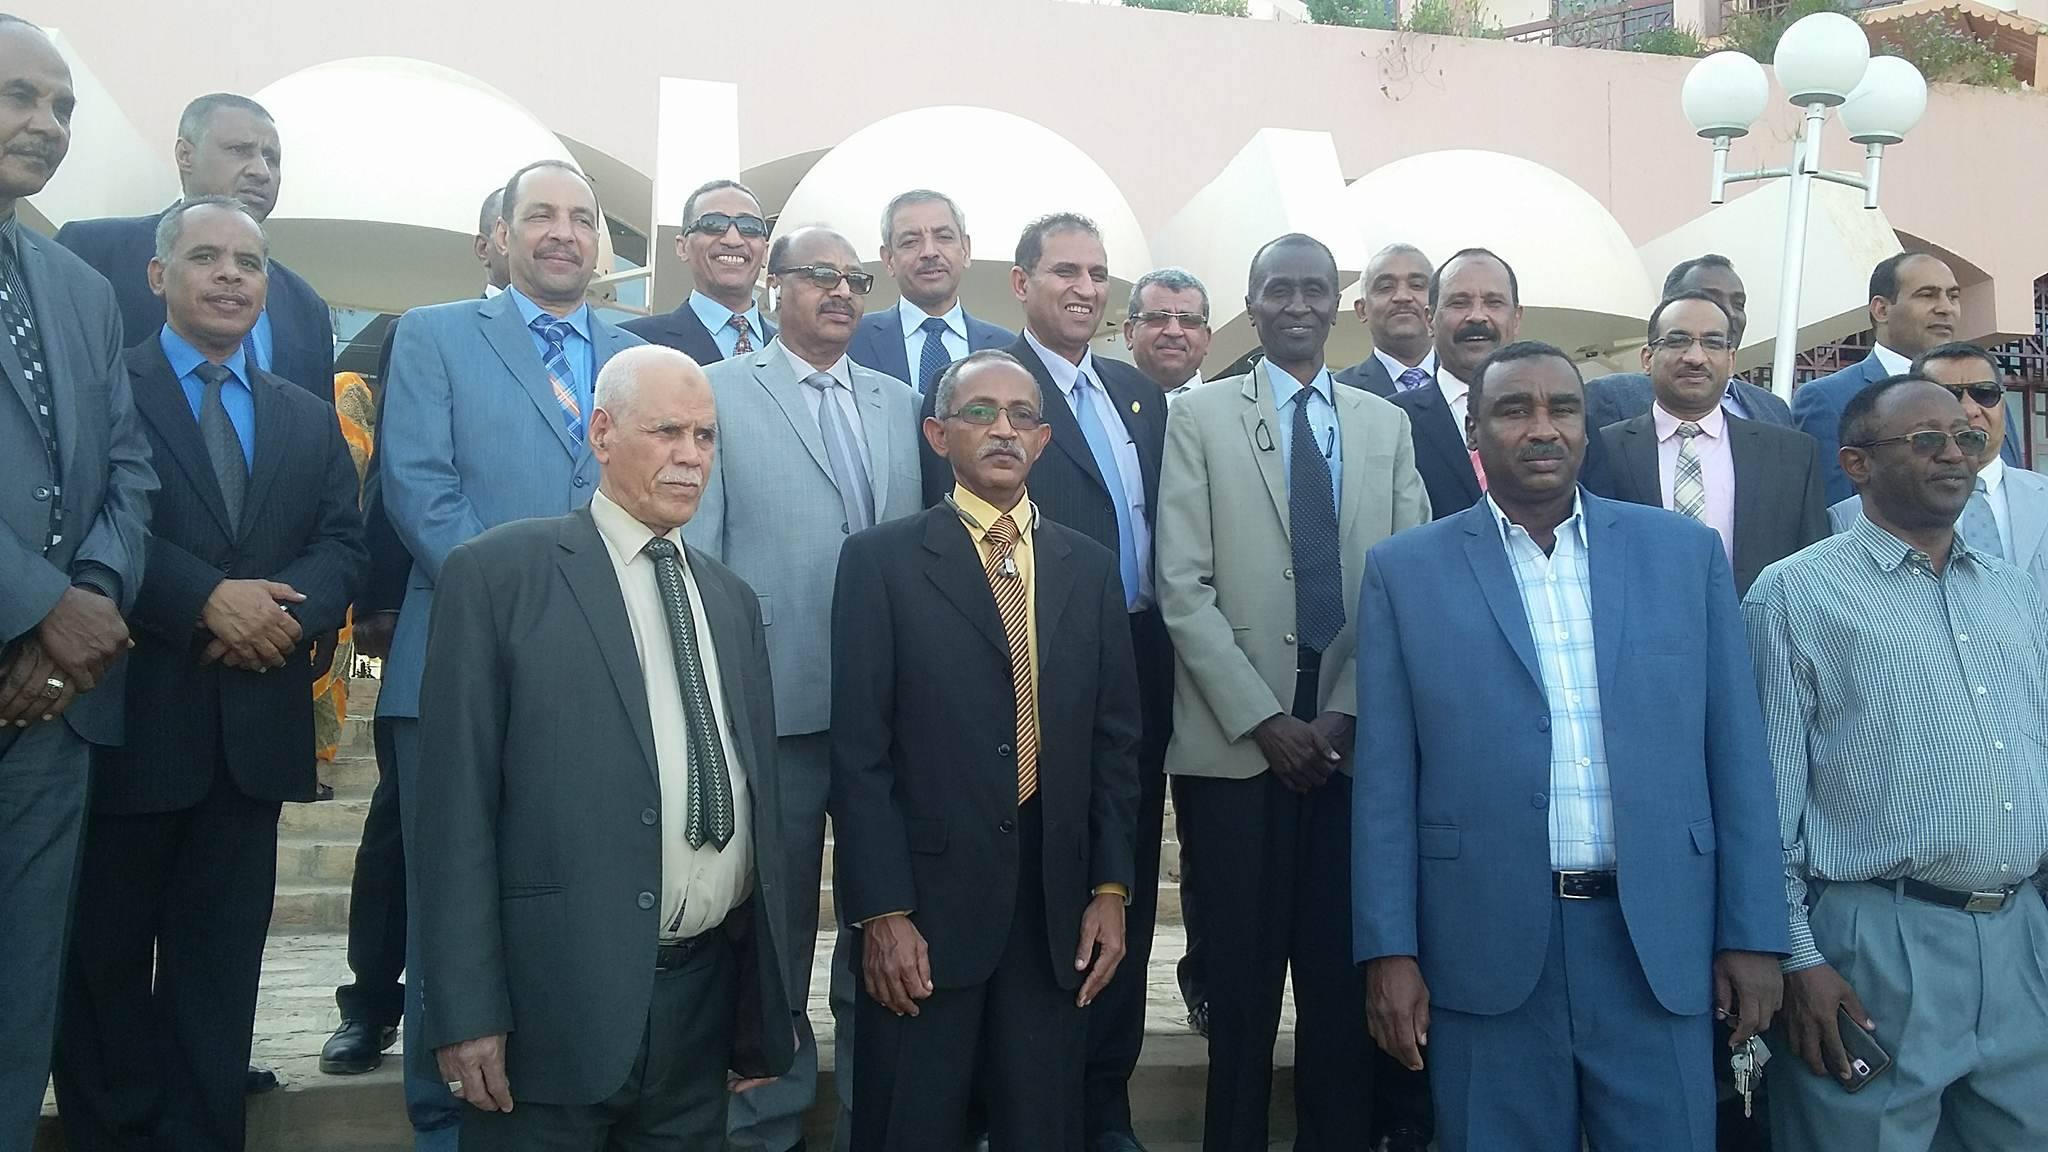  القنصل السوداني وأعضاء القنصلية وقيادات جامعة أسوان